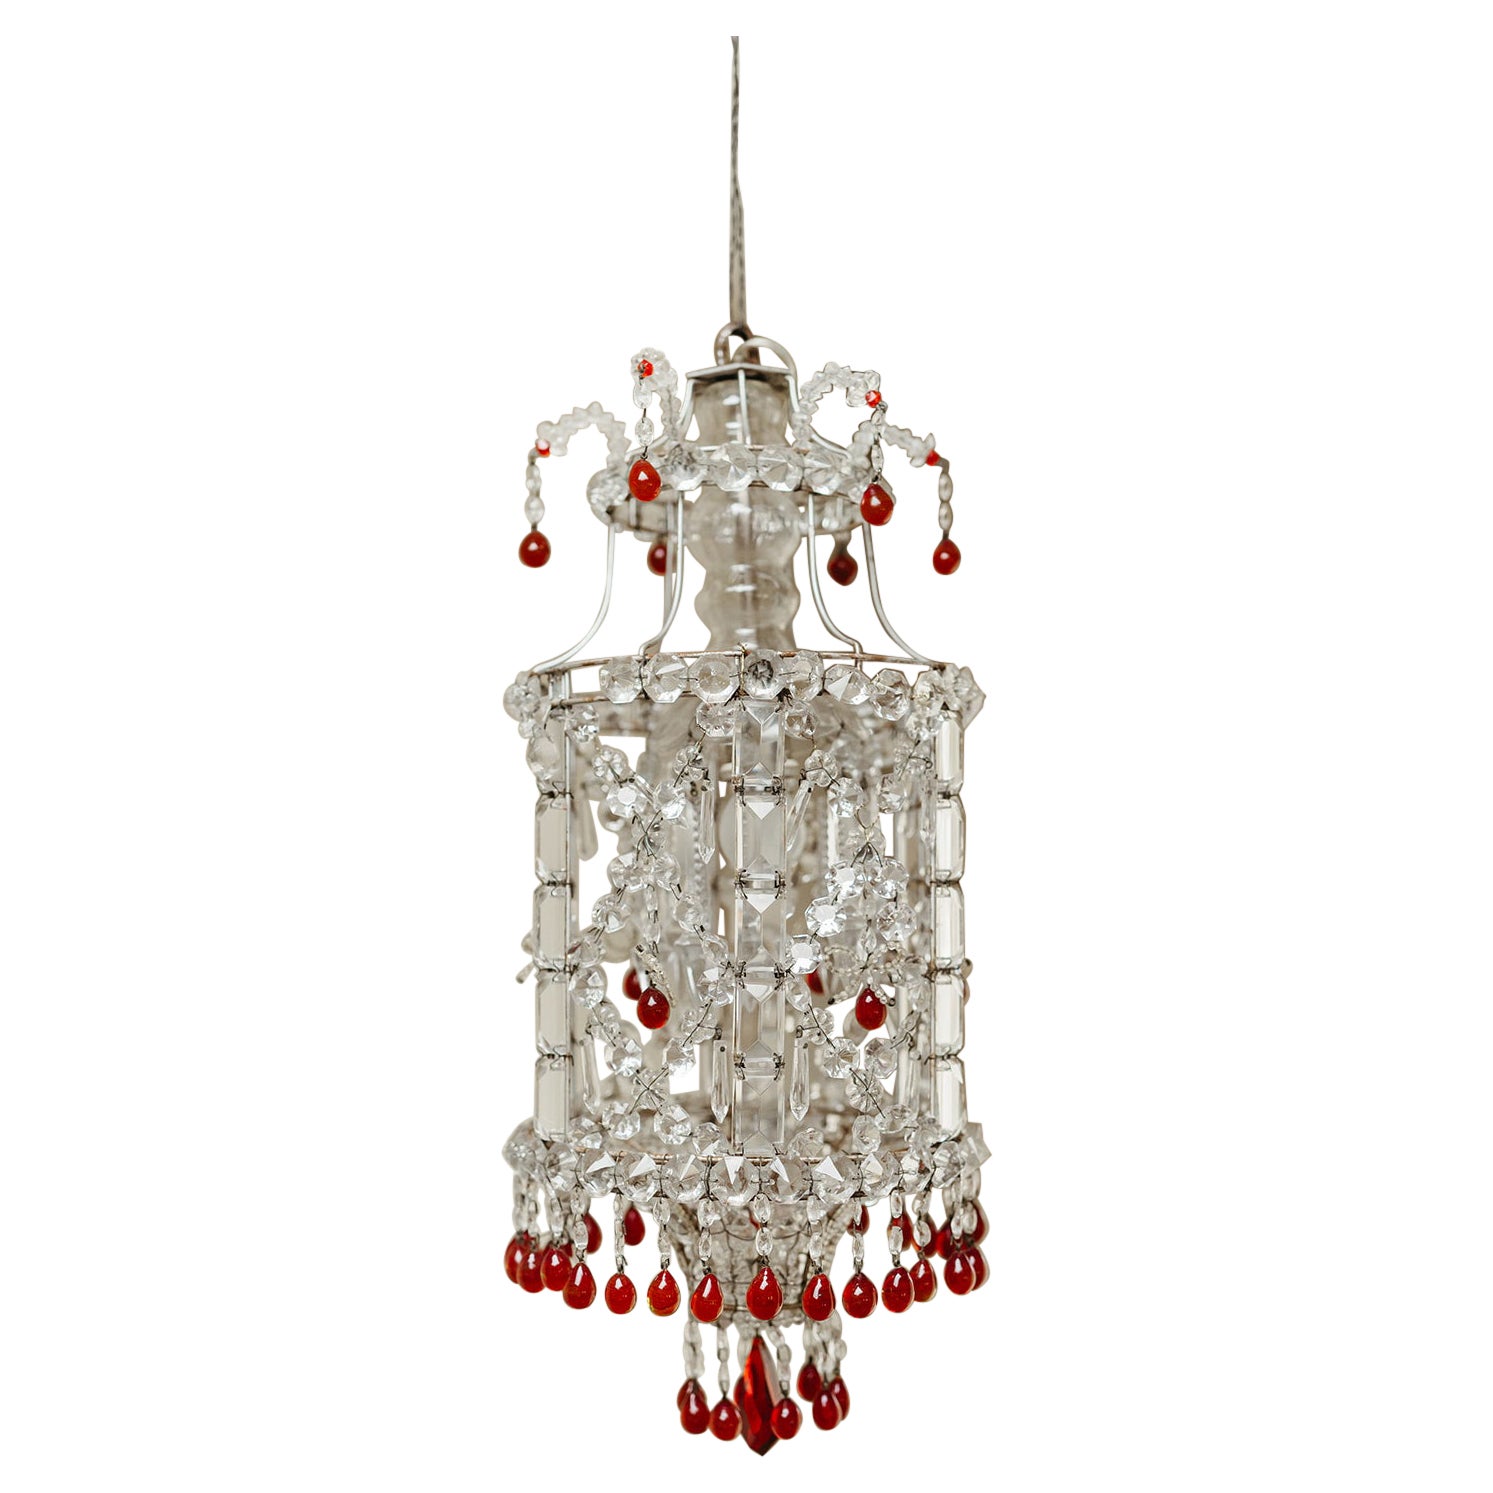 1930's Italian glass chandelier ... 